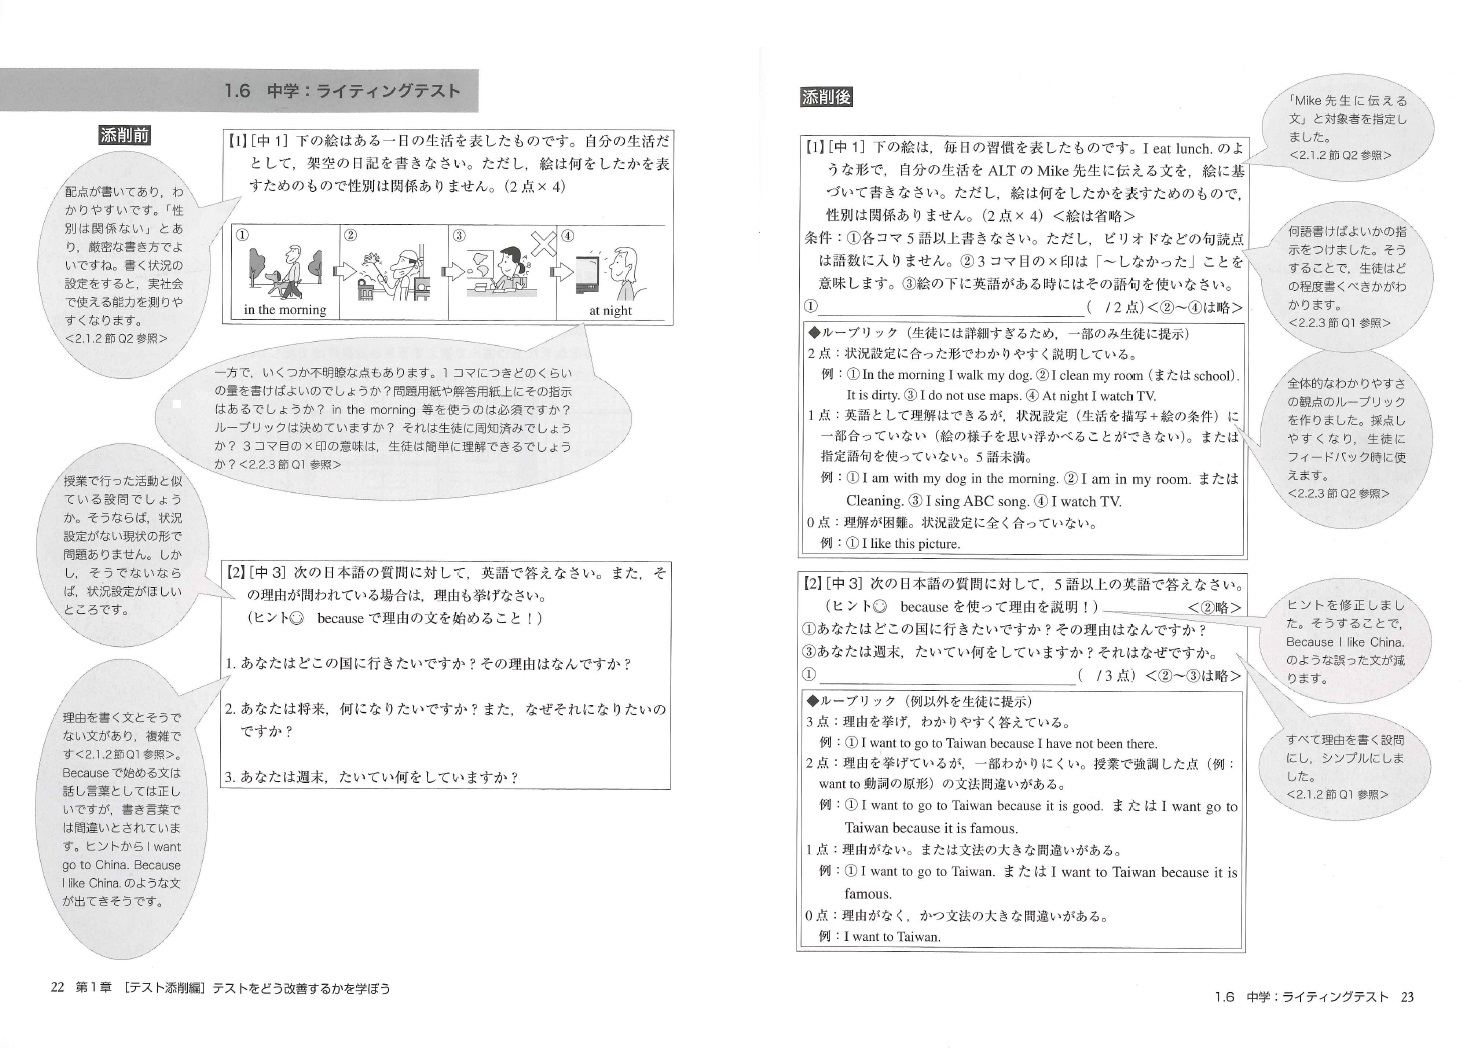 国際交流基金 日本語教育通信 本ばこ 実例でわかる 英語テスト作成ガイド